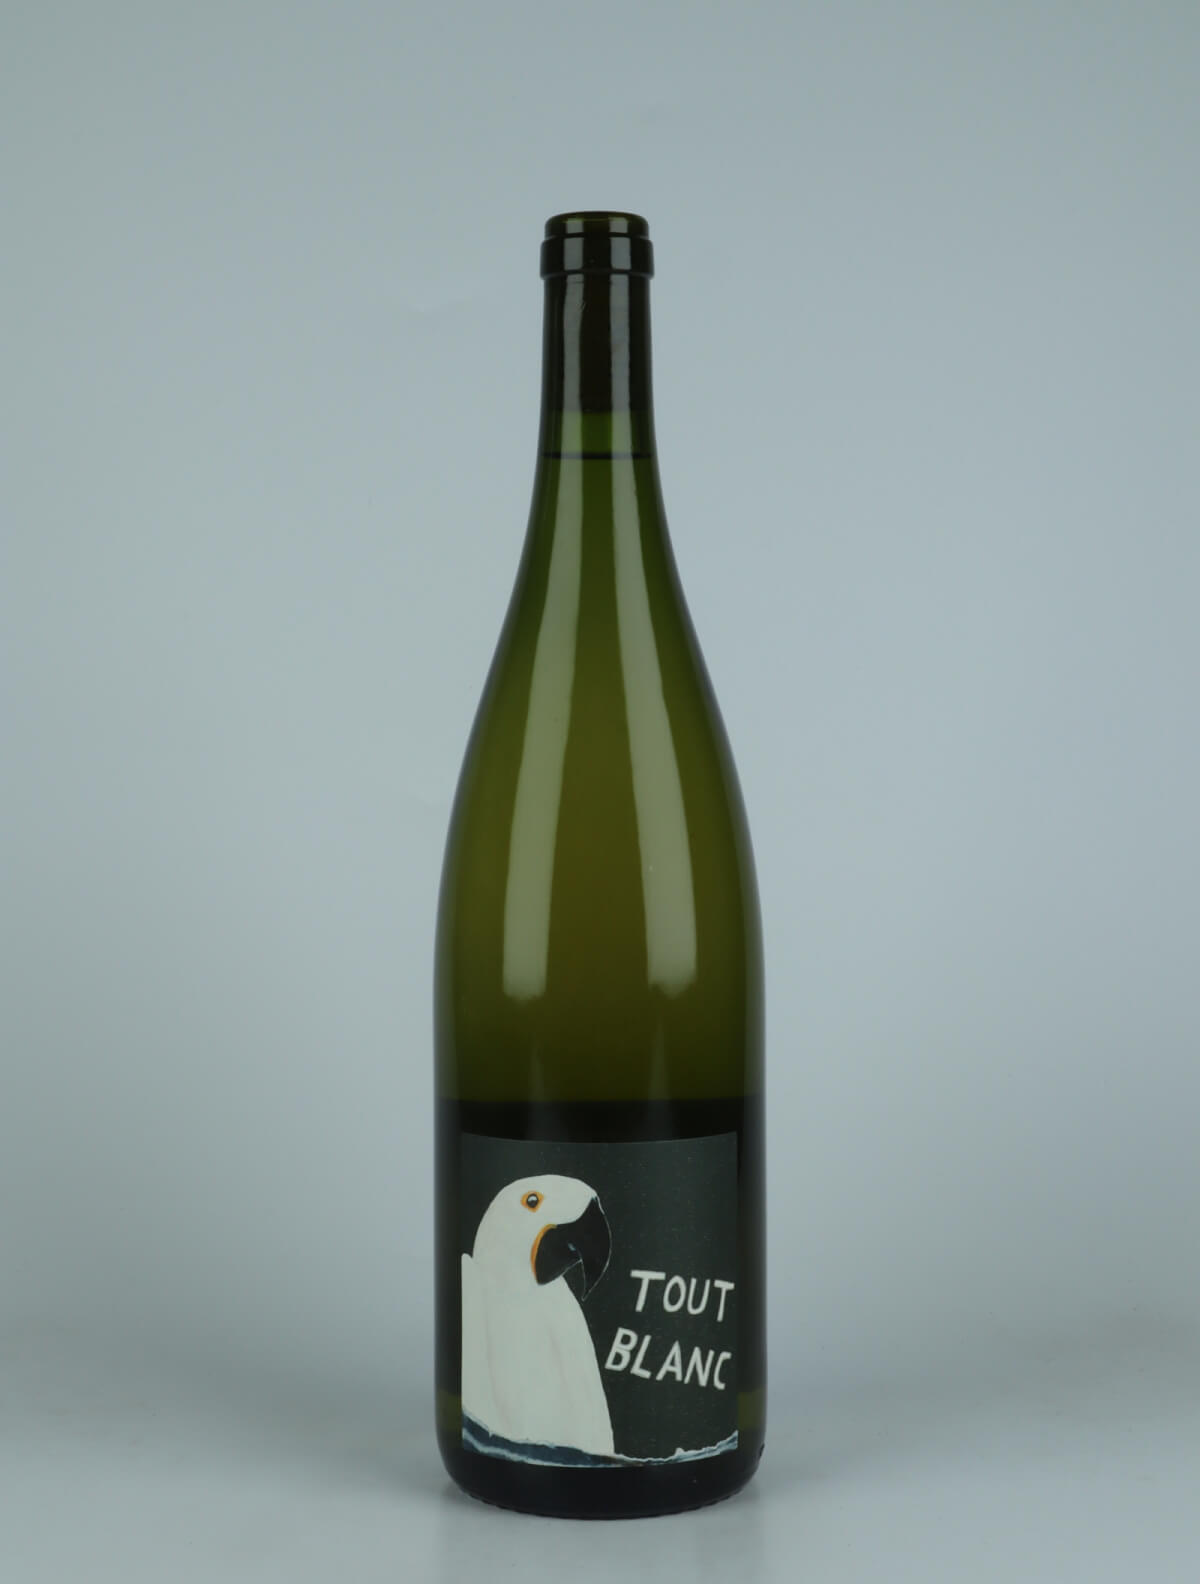 En flaske 2023 Tout Blanc - Litre Hvidvin fra Domaine Rietsch, Alsace i Frankrig